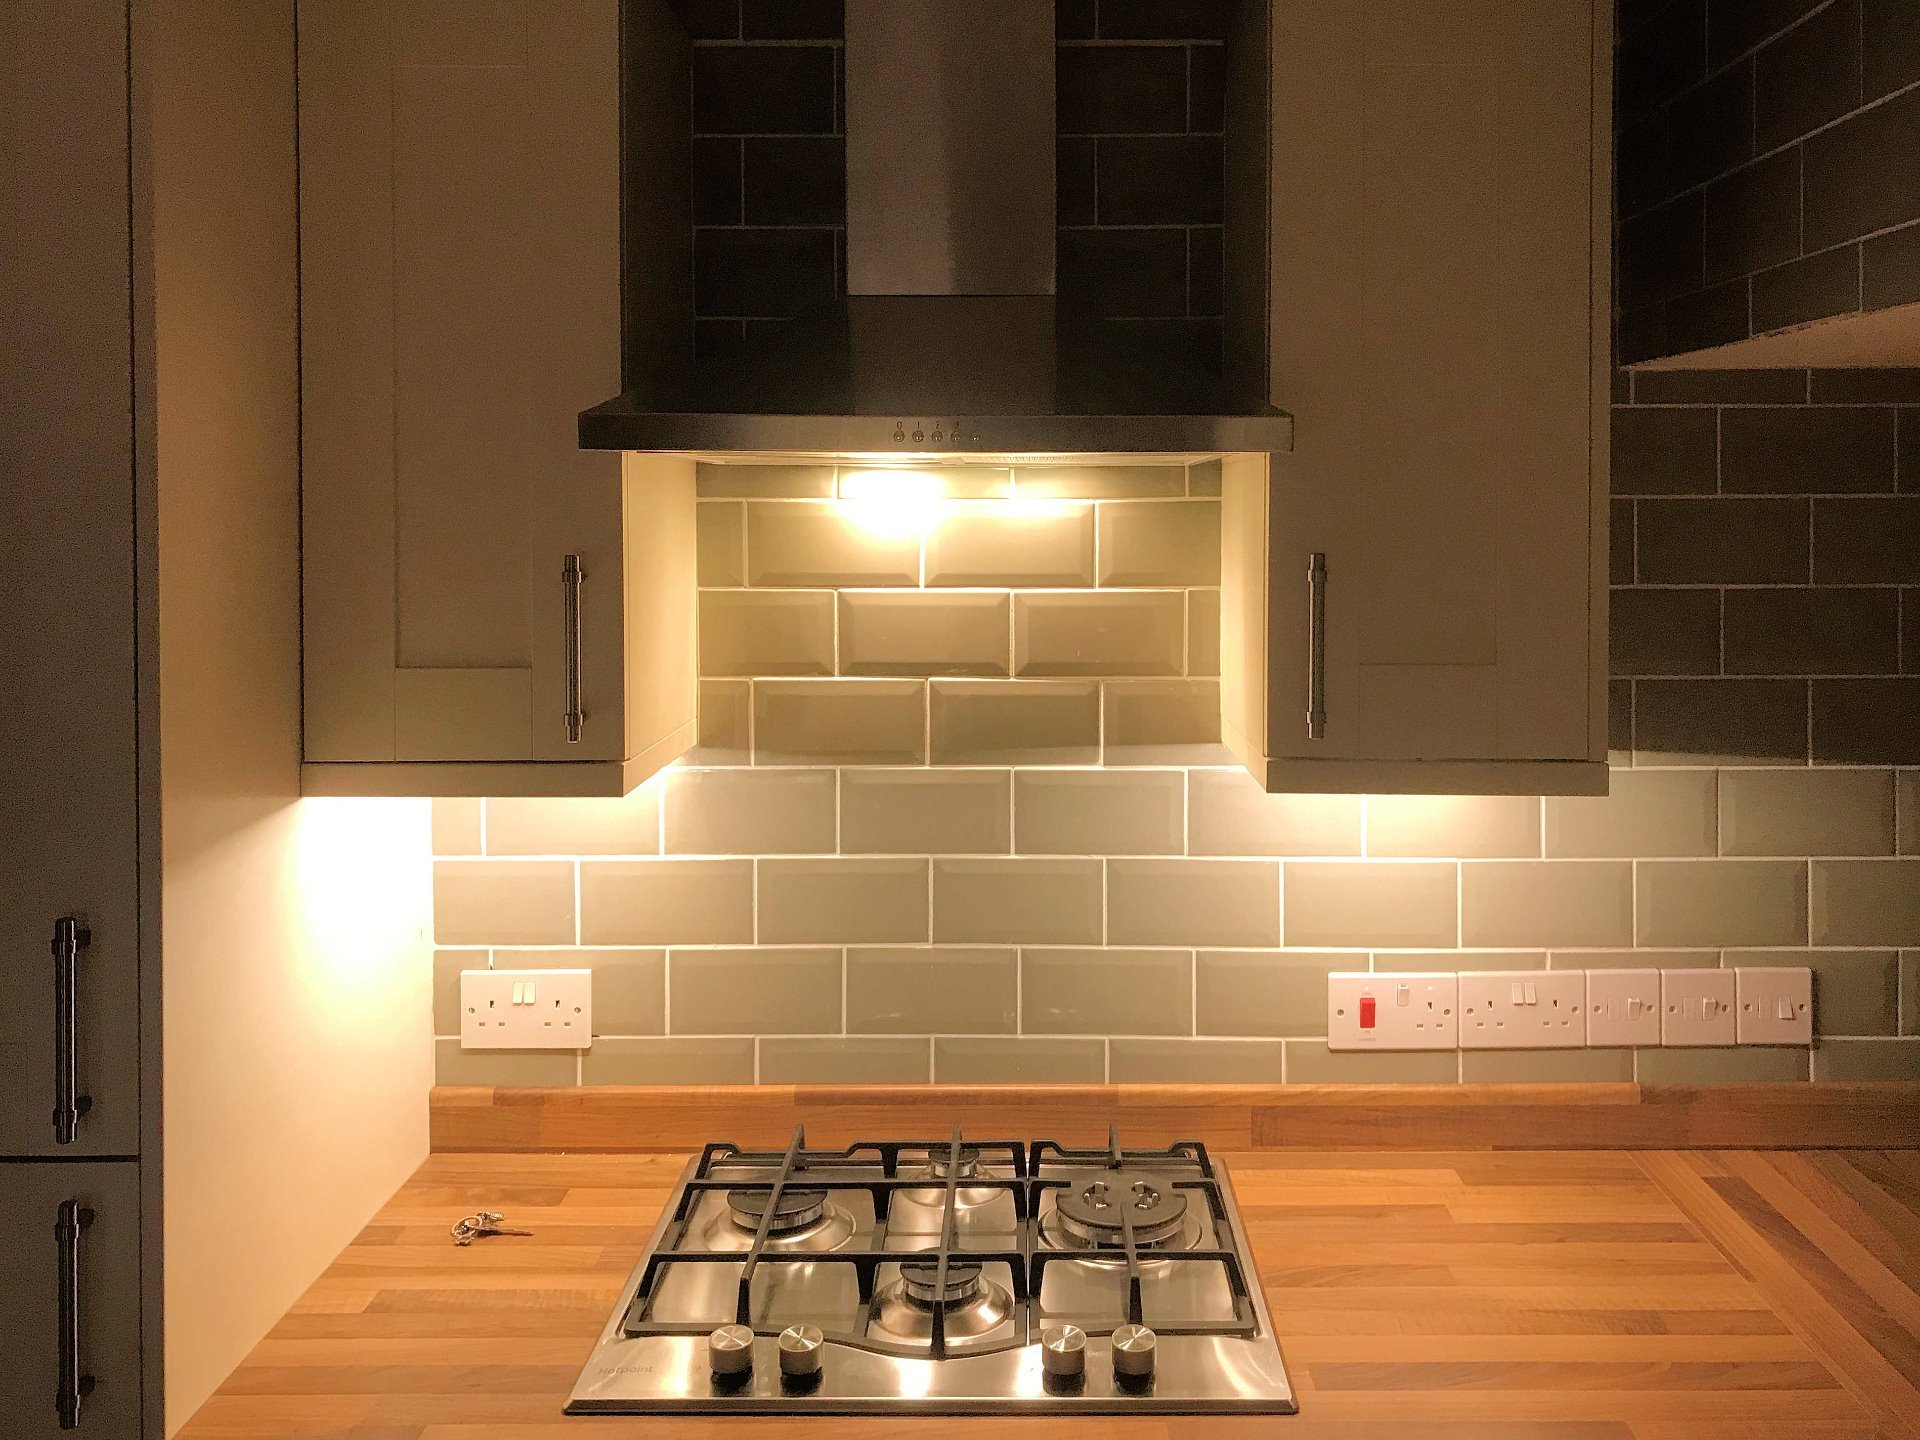 Kitchen Installation with additional lighting, North Devon